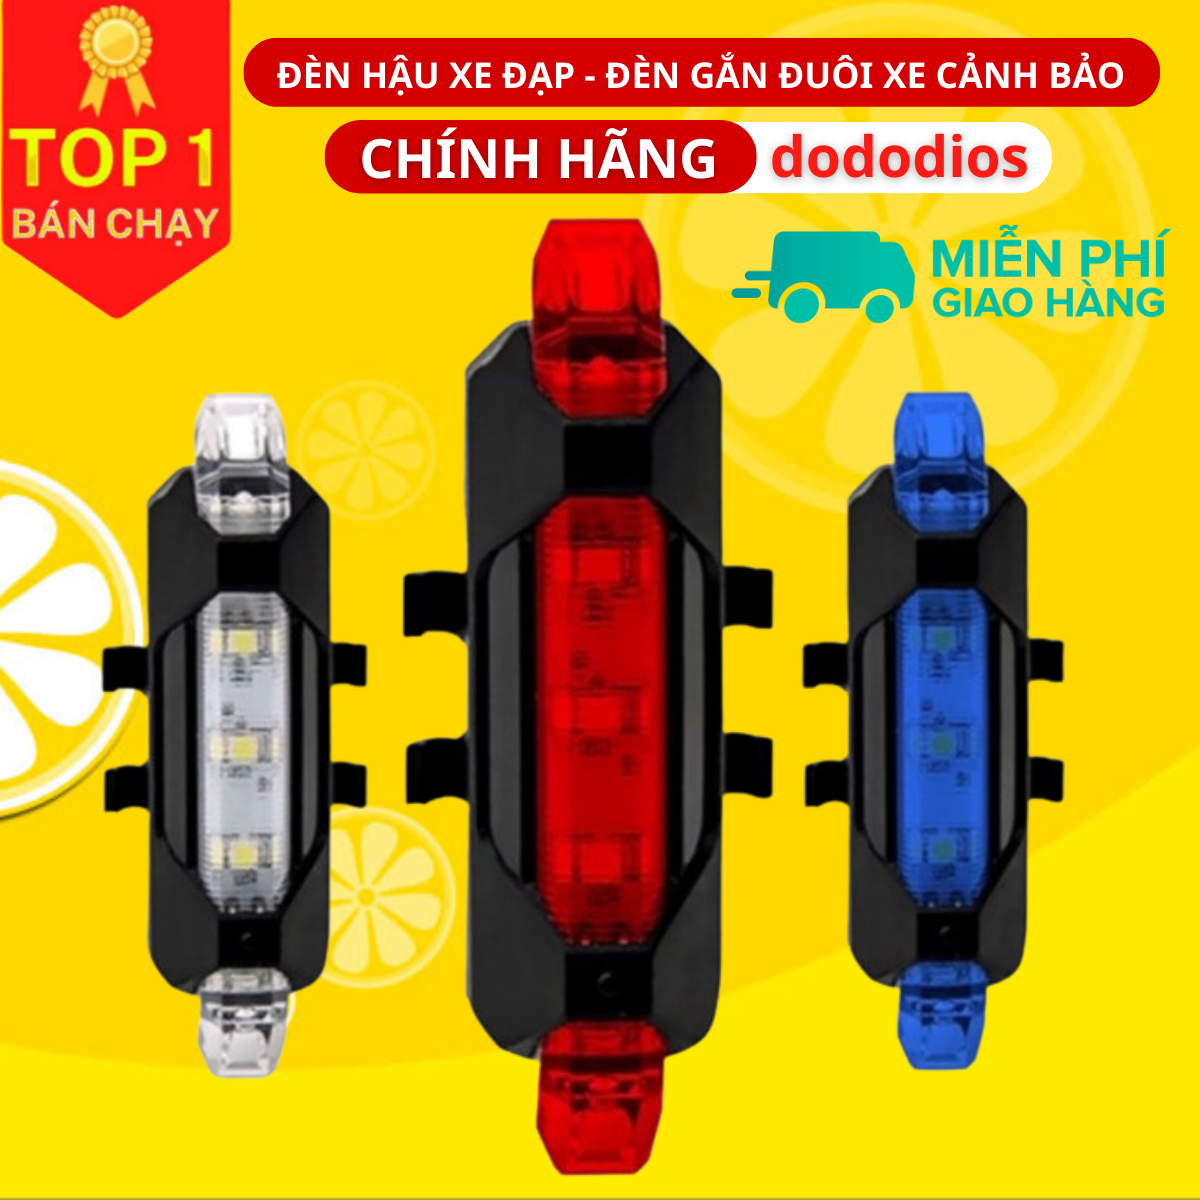 Đèn xe đạp hậu LED thể thao, đèn hậu xe đạp siêu sáng, Đèn xe đạp dododios